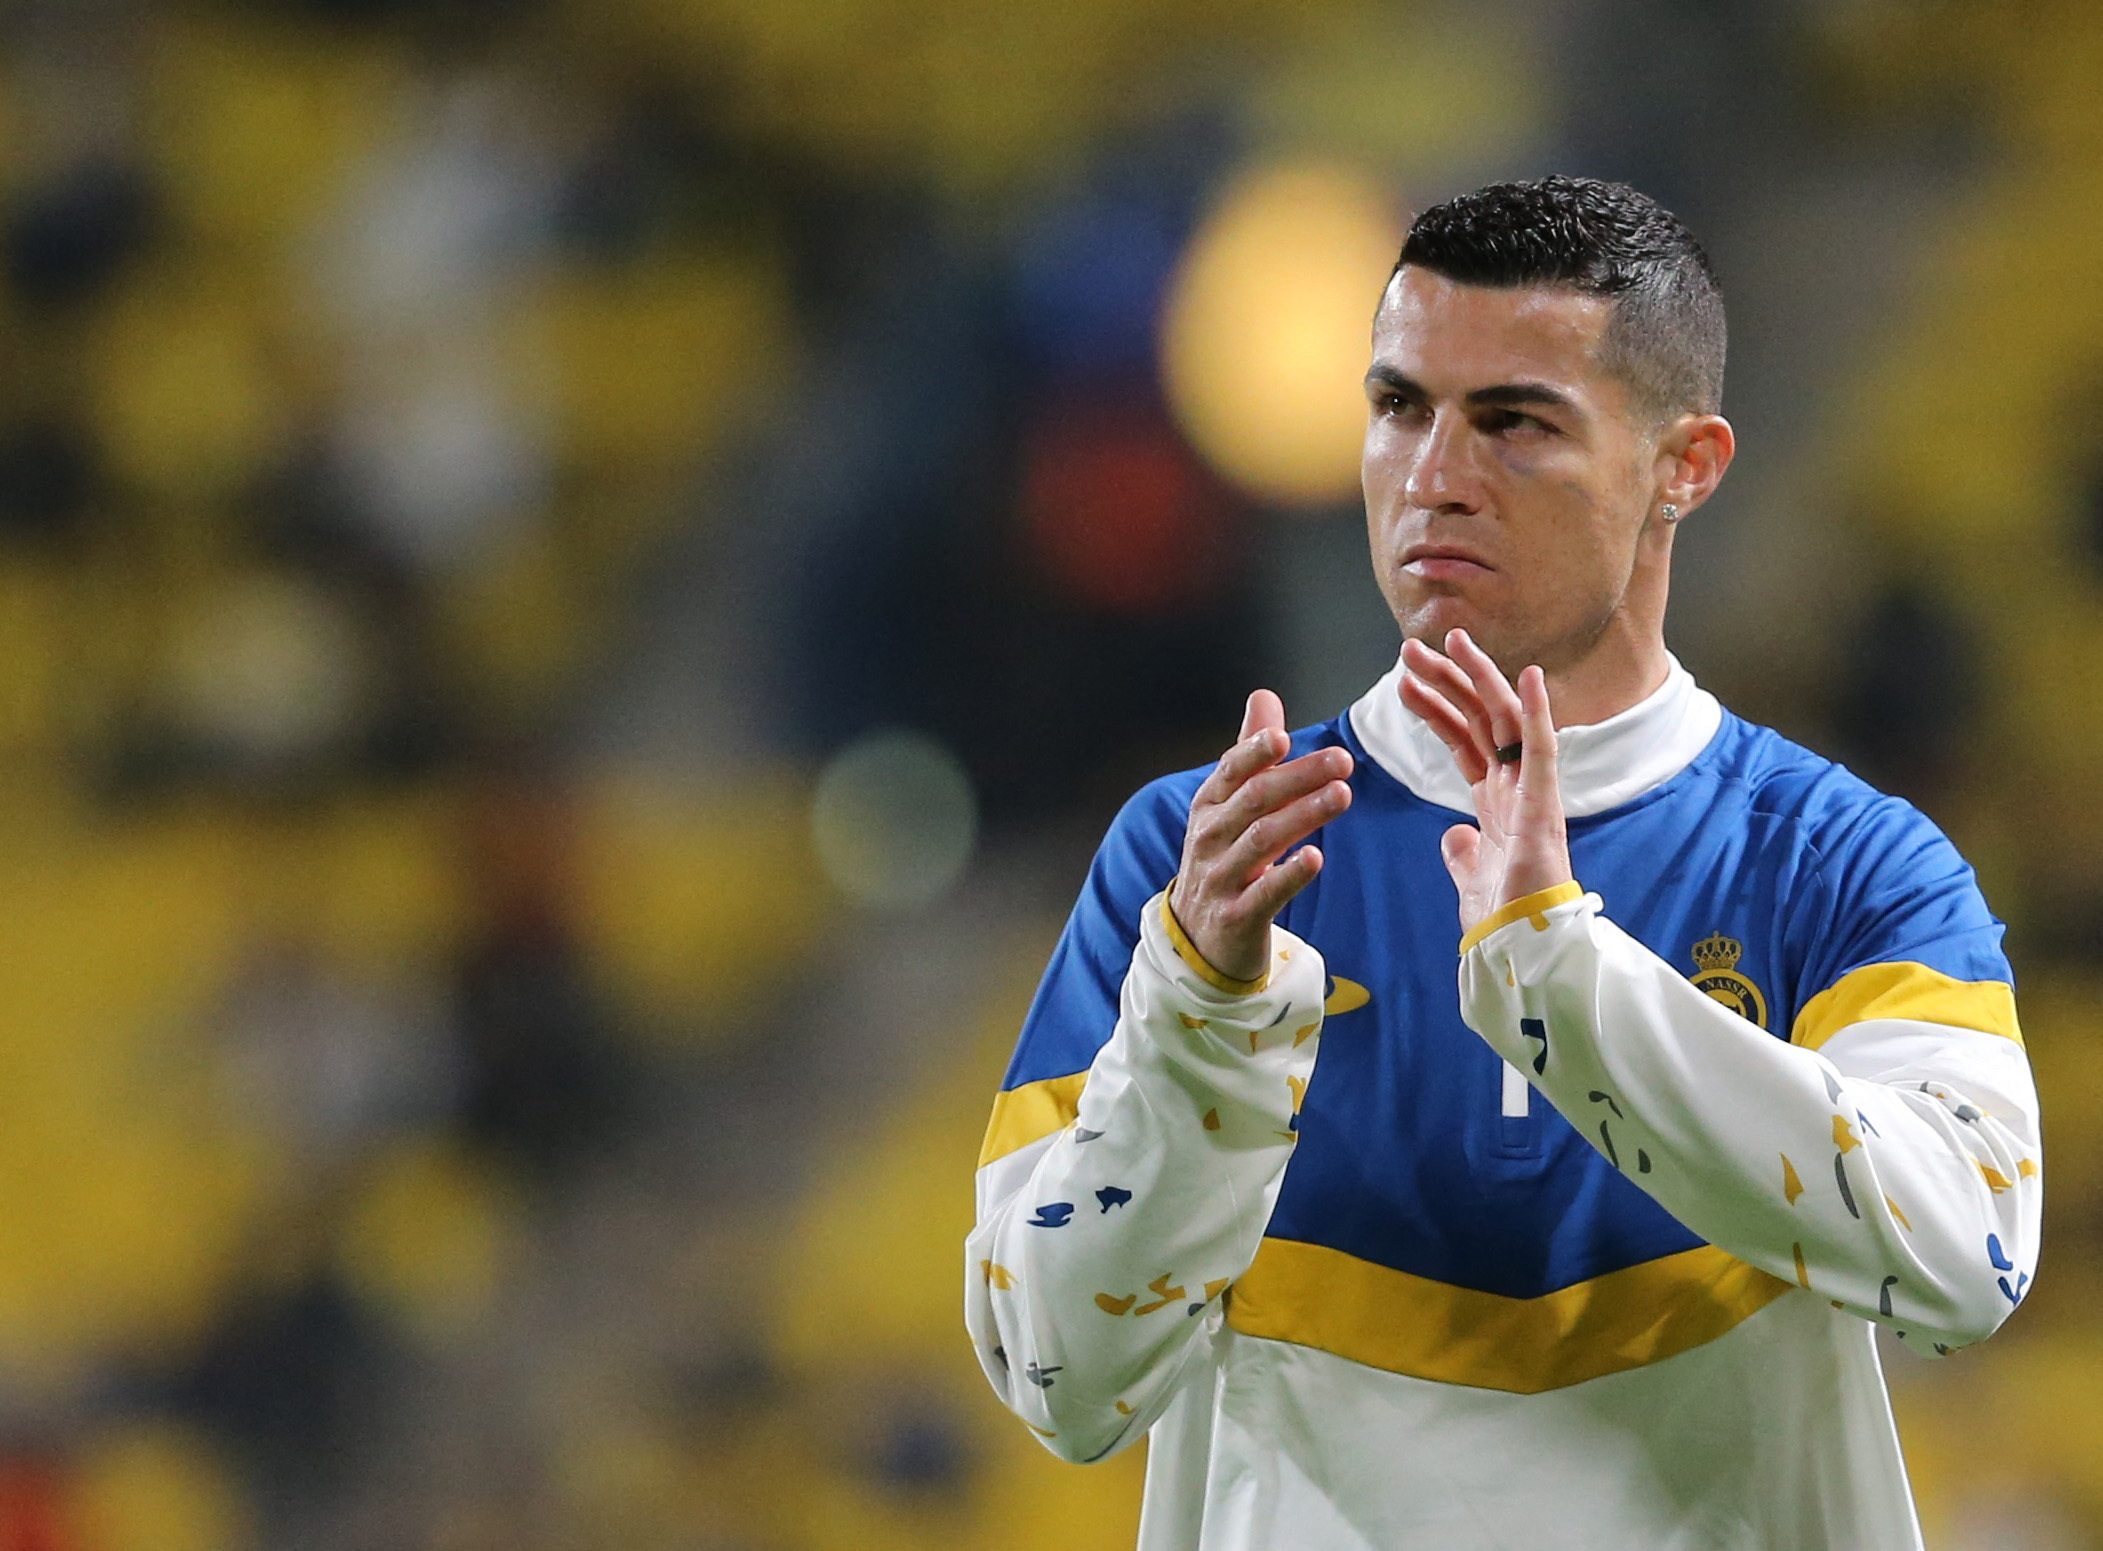 ¿Y si te llama Román? Cristiano Ronaldo podría jugar en la Bombonera. Juan Román Riquelme planea la posibilidad de armar algún encuentro amistoso entre Boca Juniors y Al Nassr (REUTERS/Ahmed Yosri)